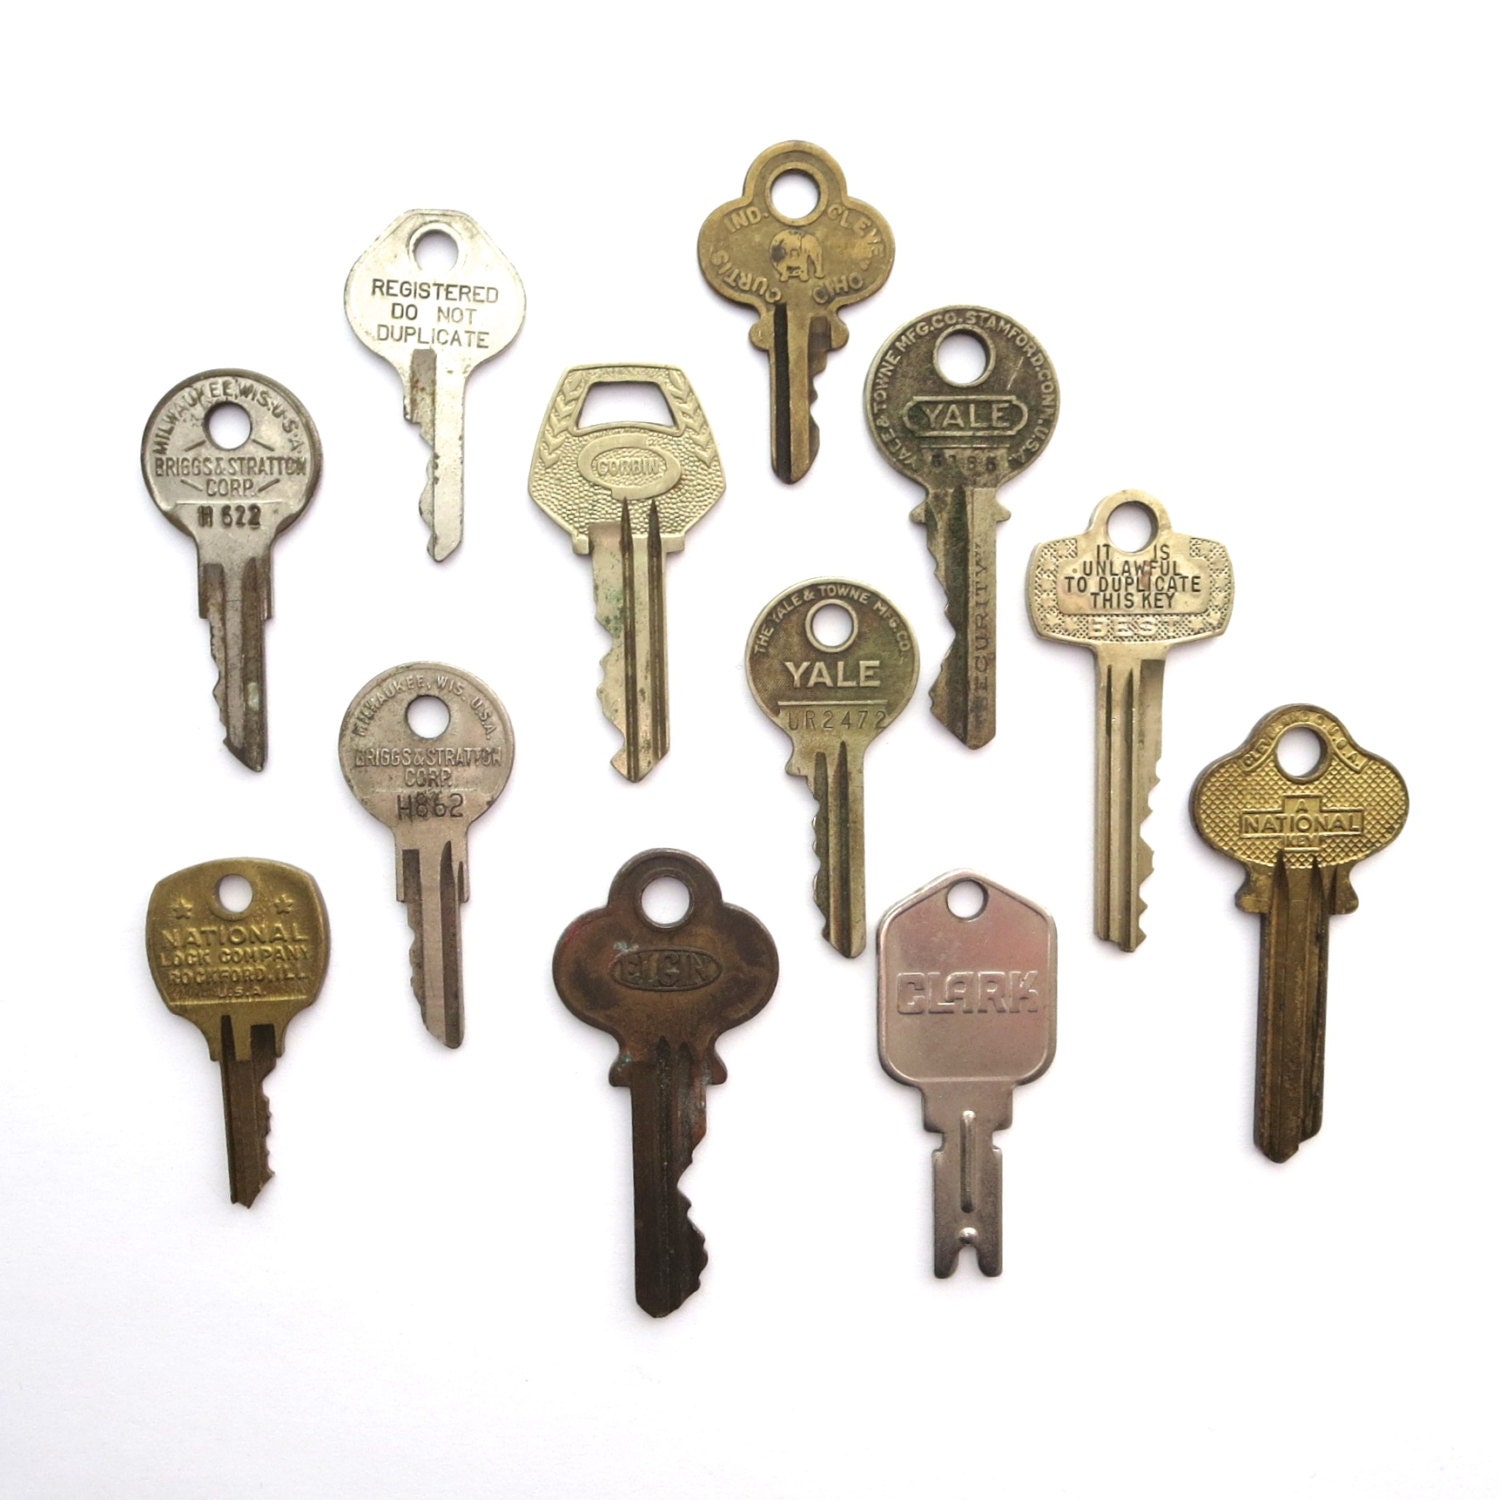 12 vintage keys Old keys Antique keys Rustic by anythinggoeshere